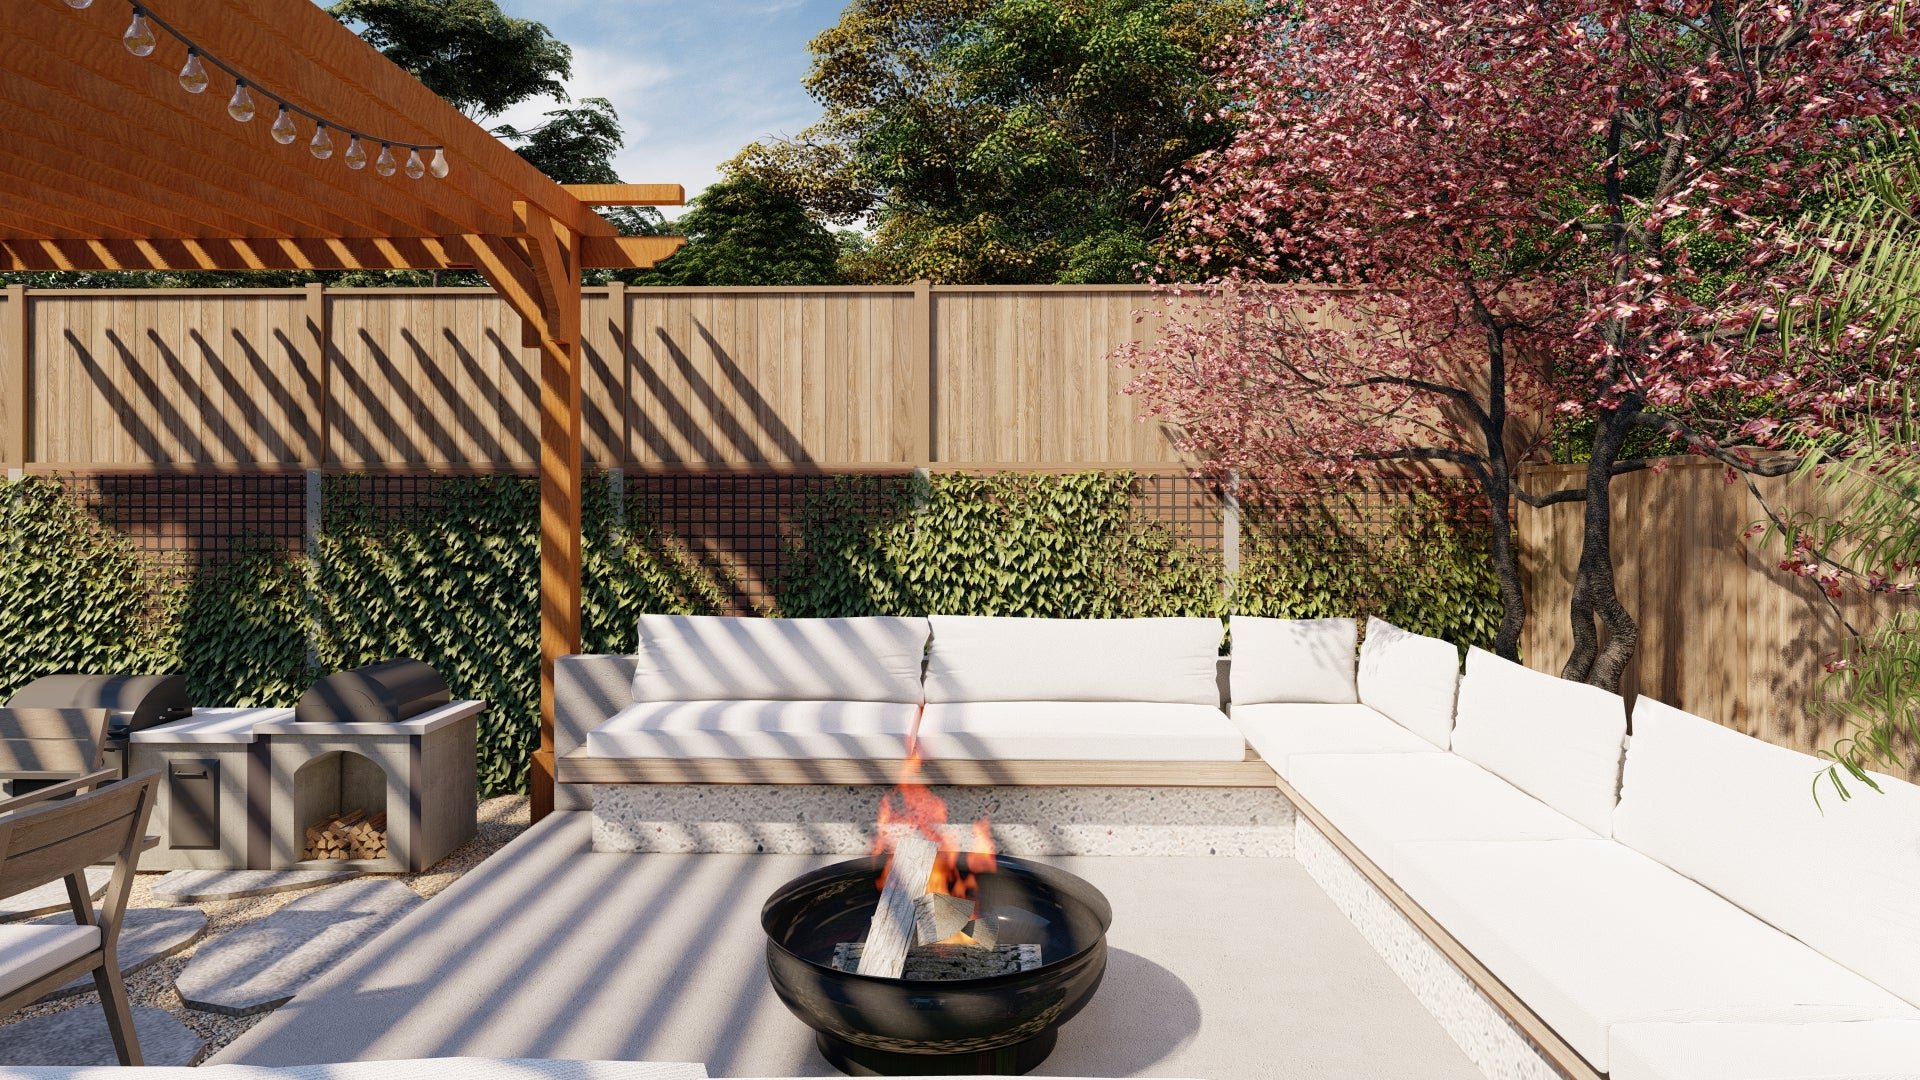 3D rendering of fire pit area in backyard